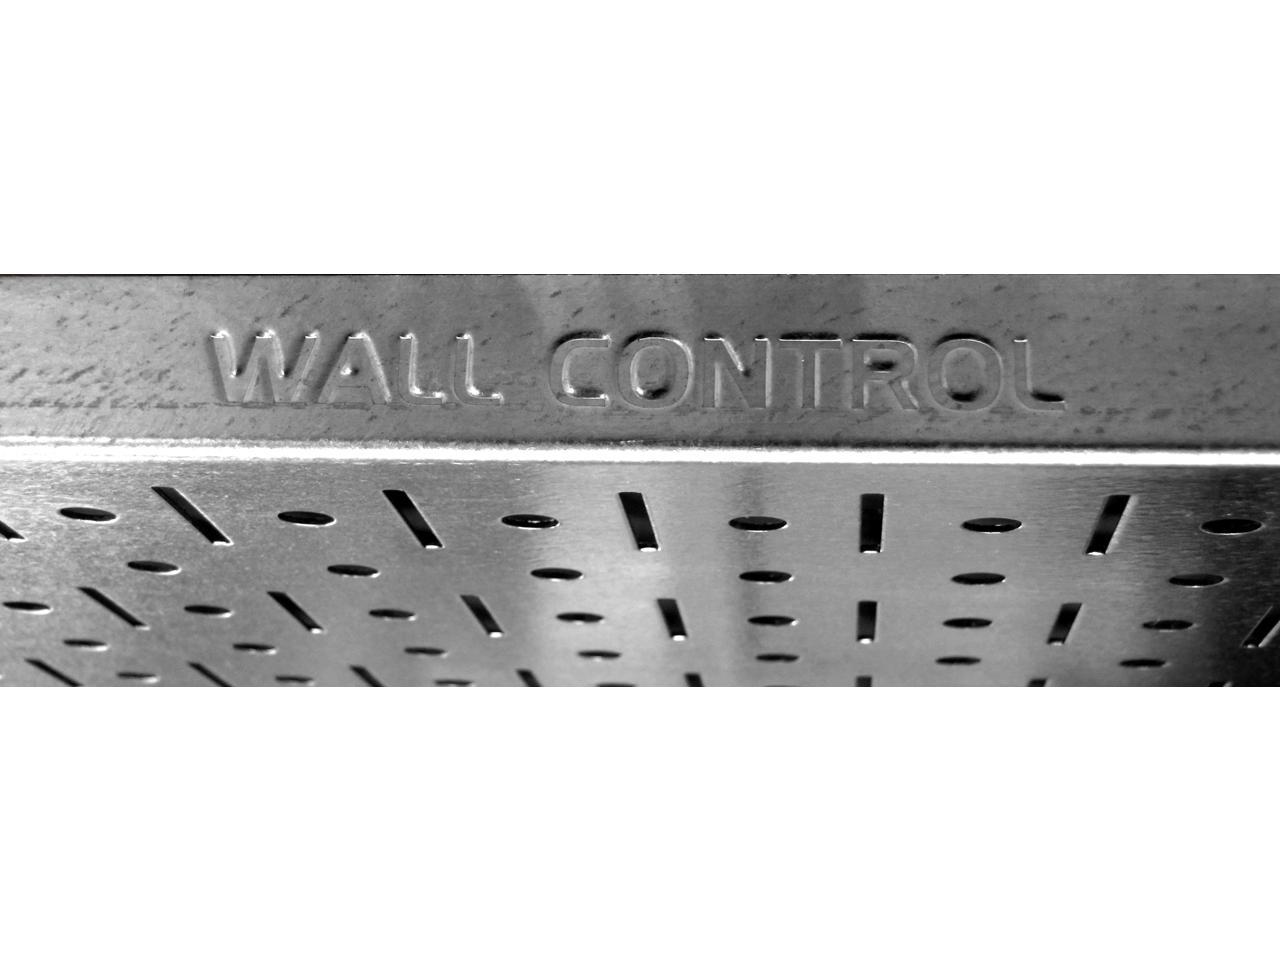 Wall Control 4ft Metal Pegboard Standard Tool Storage Kit Galvanized  Metallic Toolboard  Black Accessories